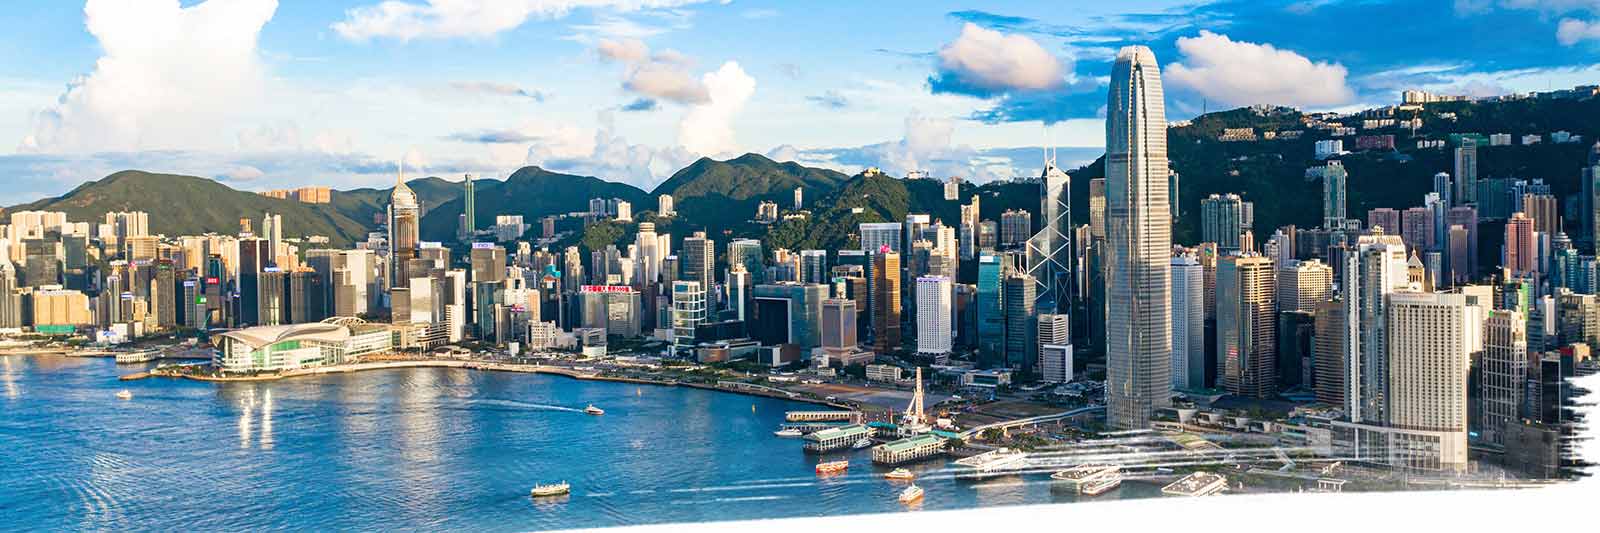 Hong kong property market monitor